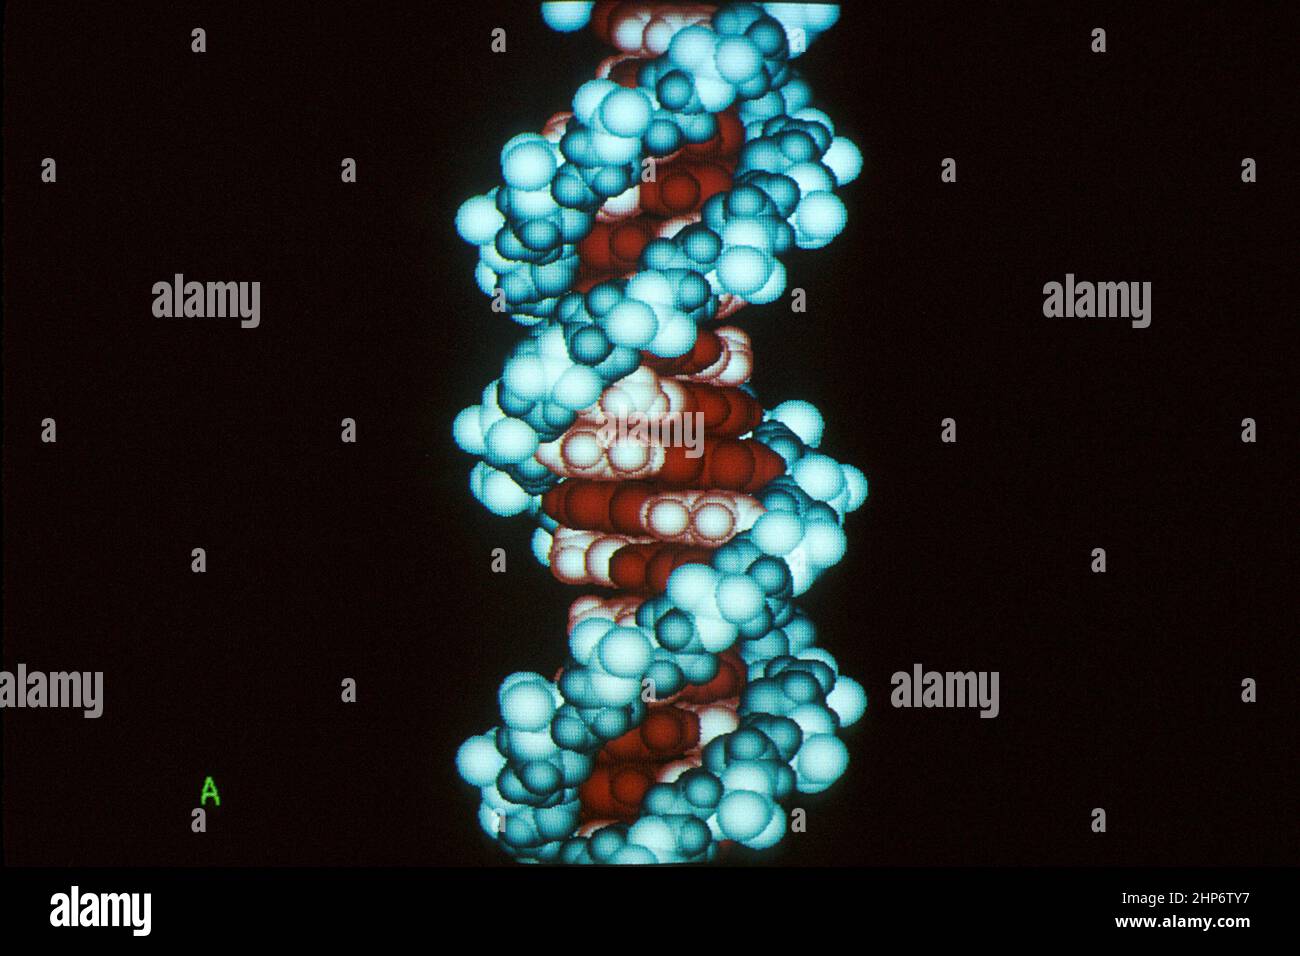 Ein DNA-Molekül. Computergrafikbilder werden mithilfe von Daten erstellt, die in einen Computer eingespeist werden. Diese Daten können aus chemischen Elementen und Gewichten für bestimmte Farben bestehen, die diese Gewichte und Maße darstellen. März 1982 Stockfoto